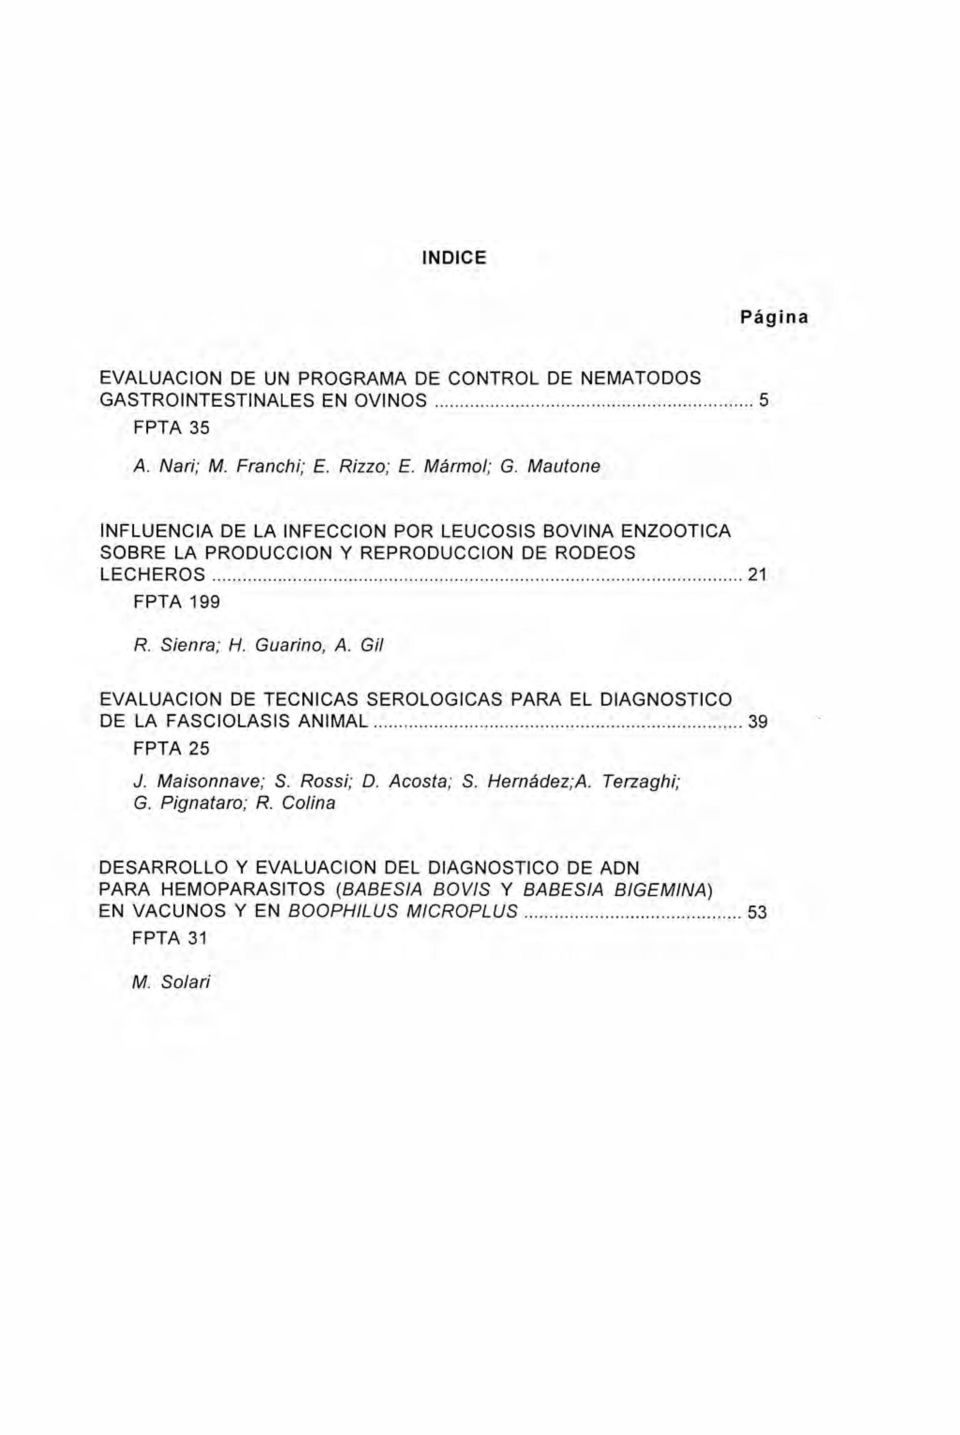 Gil EVALUACIÓN DE TÉCNICAS SEROLOGICAS PARA EL DIAGNOSTICO DE LA FASCIOLASIS ANIMAL 39 FPTA 25 J. Maisonnave; S. Rossi; D. Acosta; S. Hernádez;A. Terzaghi; G.